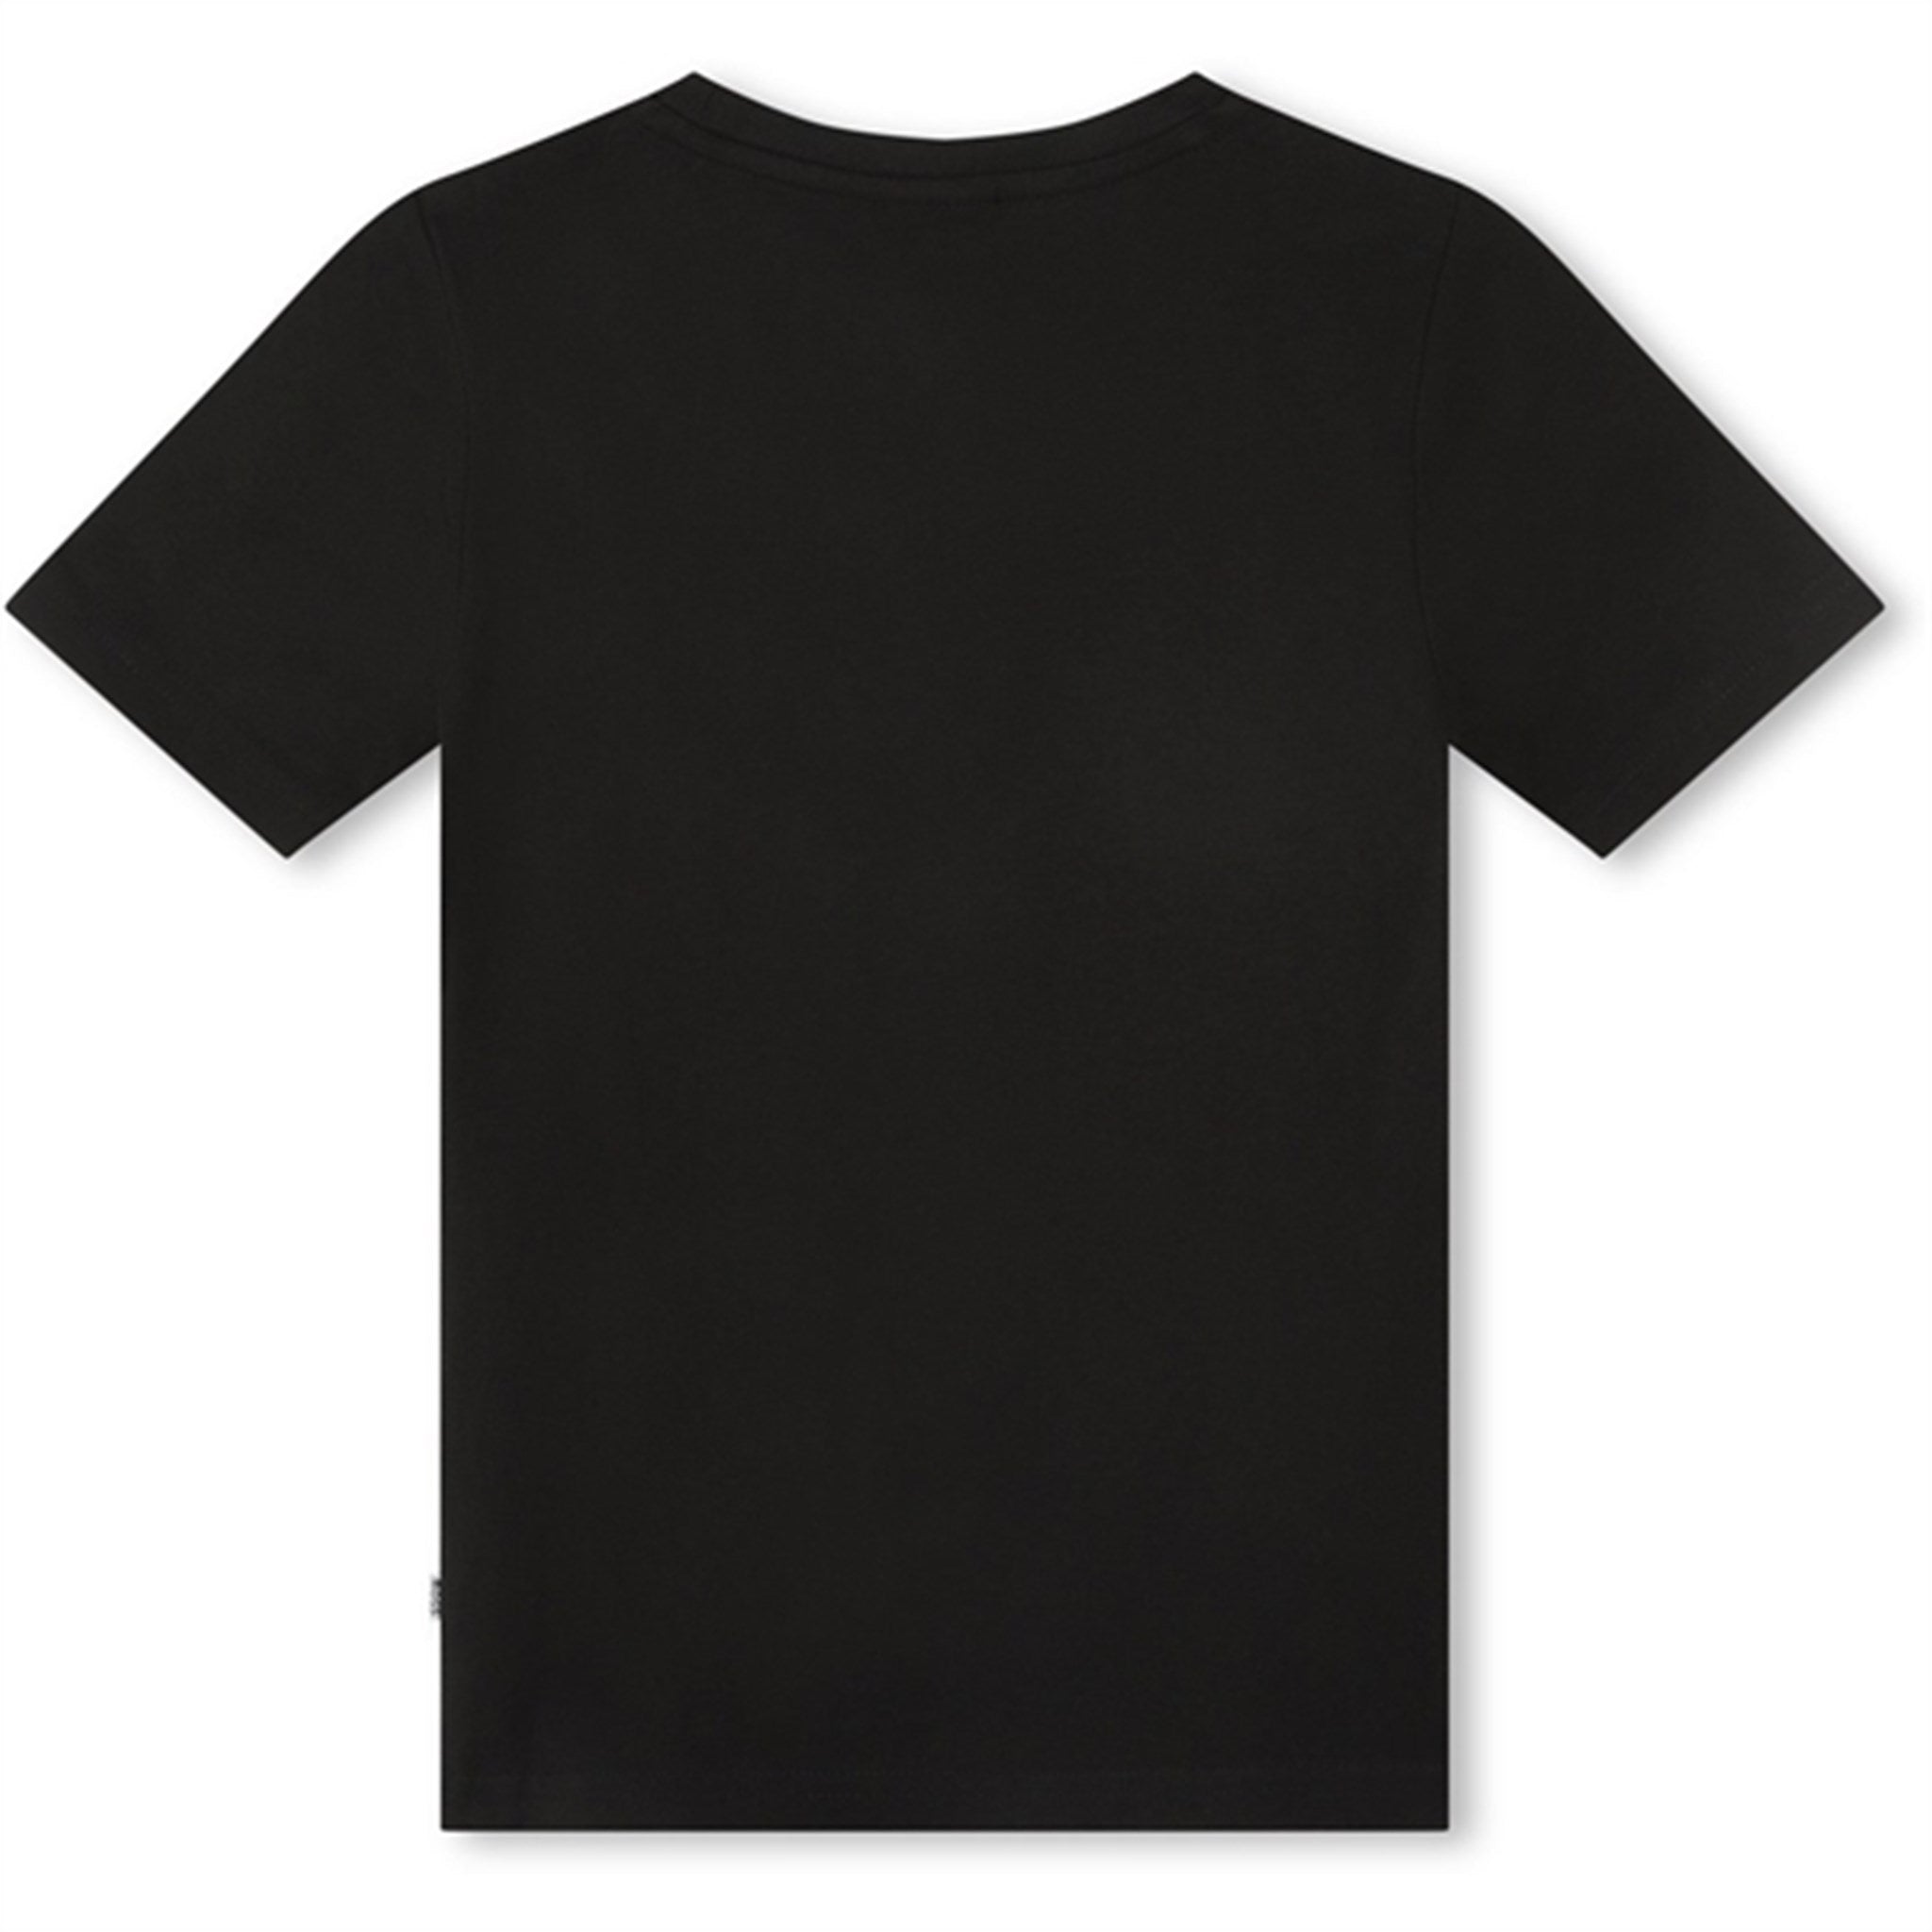 Hugo Boss Black T-shirt 2